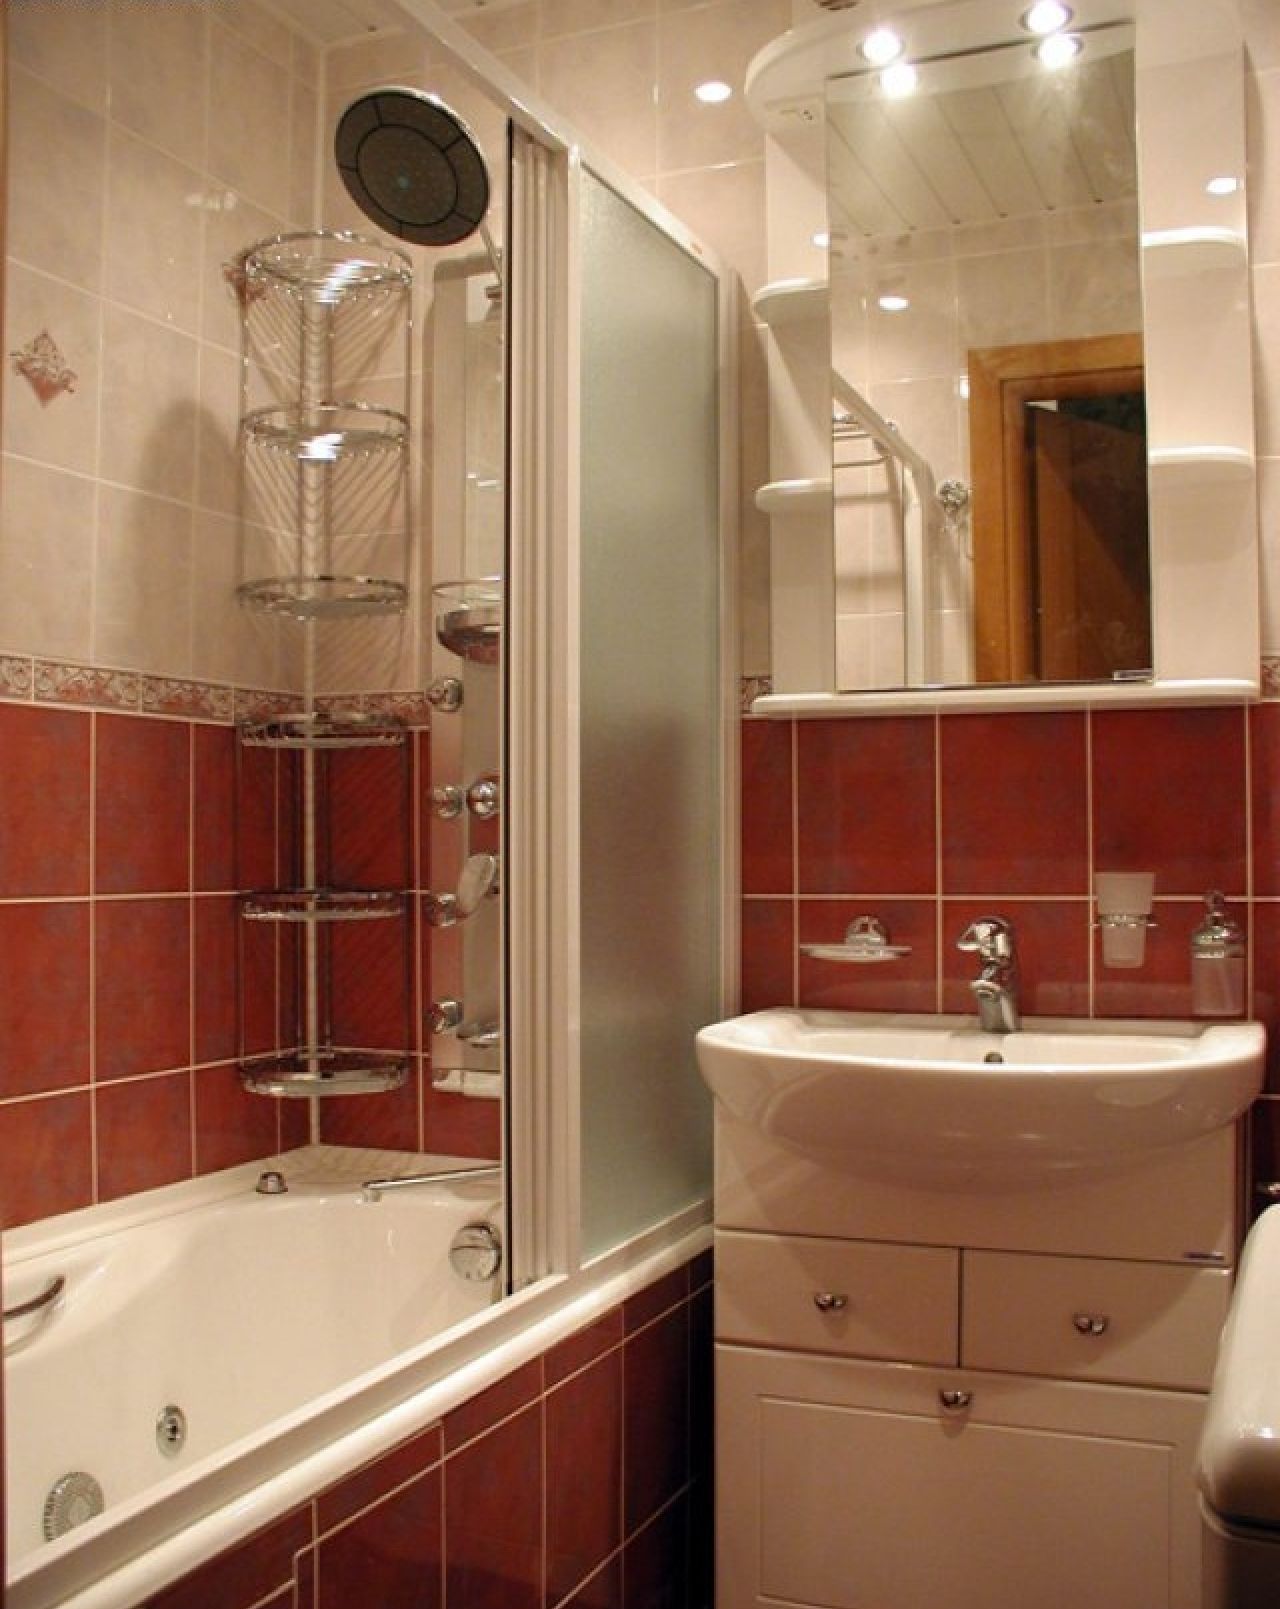 Ремонт ванной комнаты фото малых размеров в панельном доме